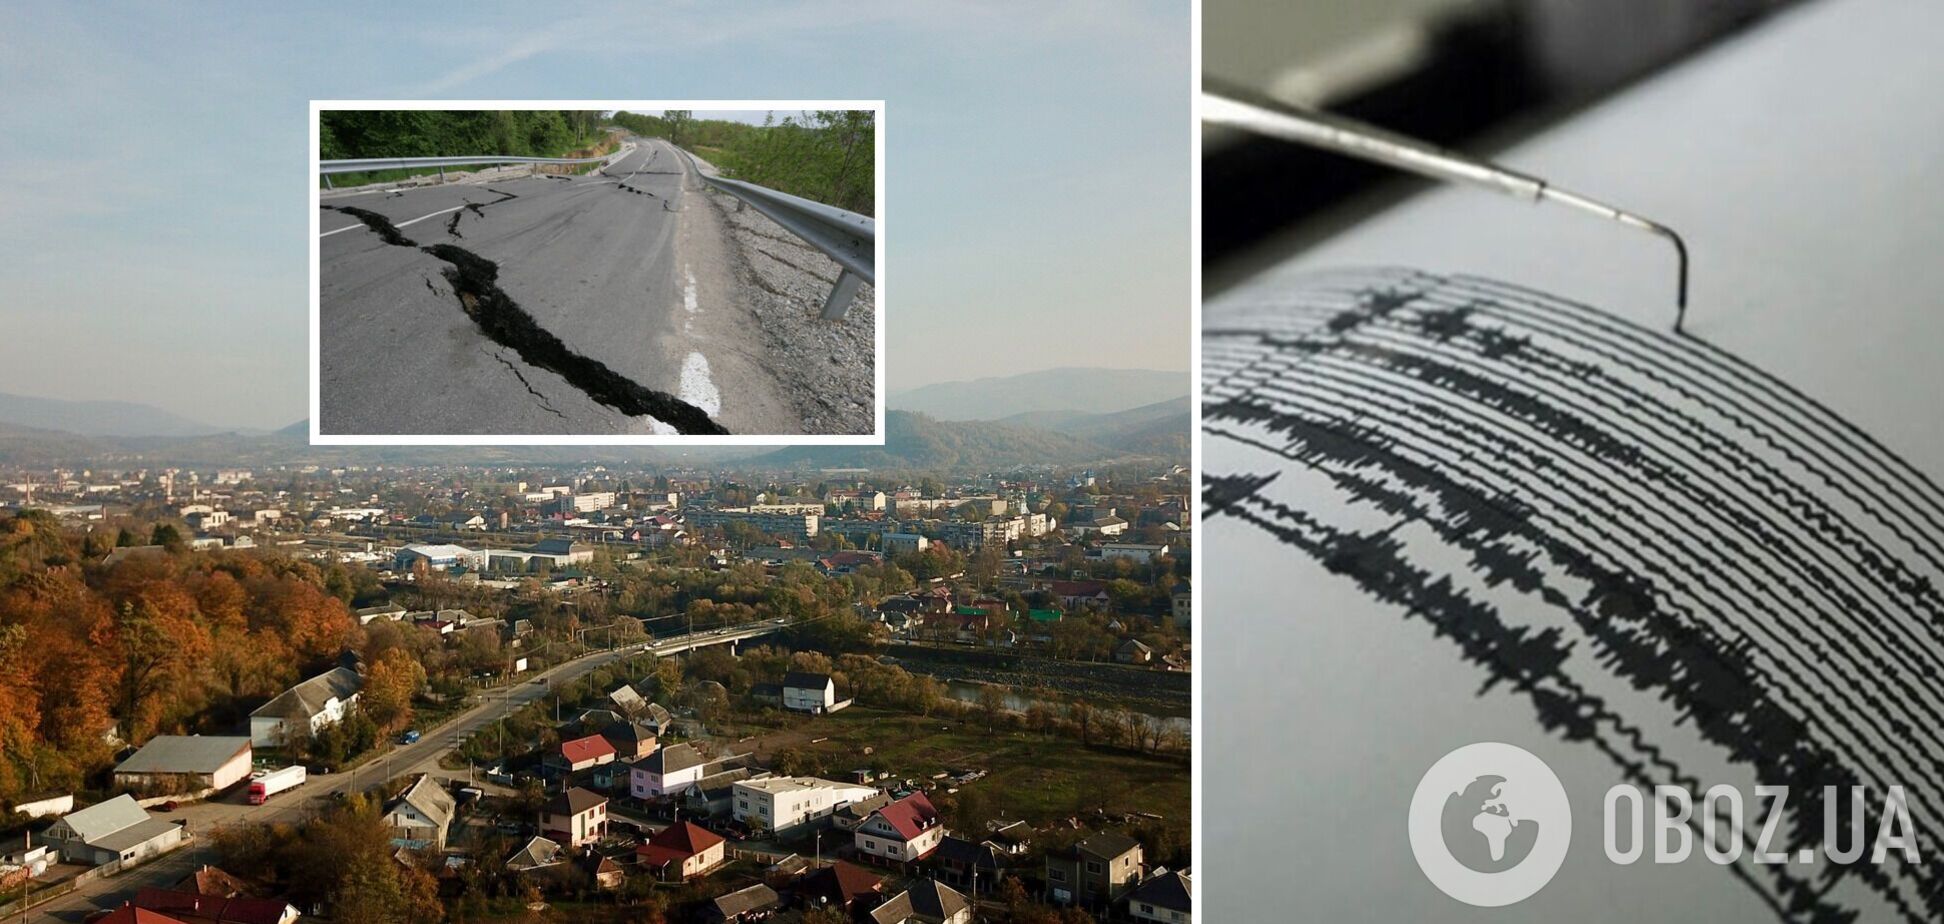 На Закарпатье зафиксировали землетрясение: подробности и карта